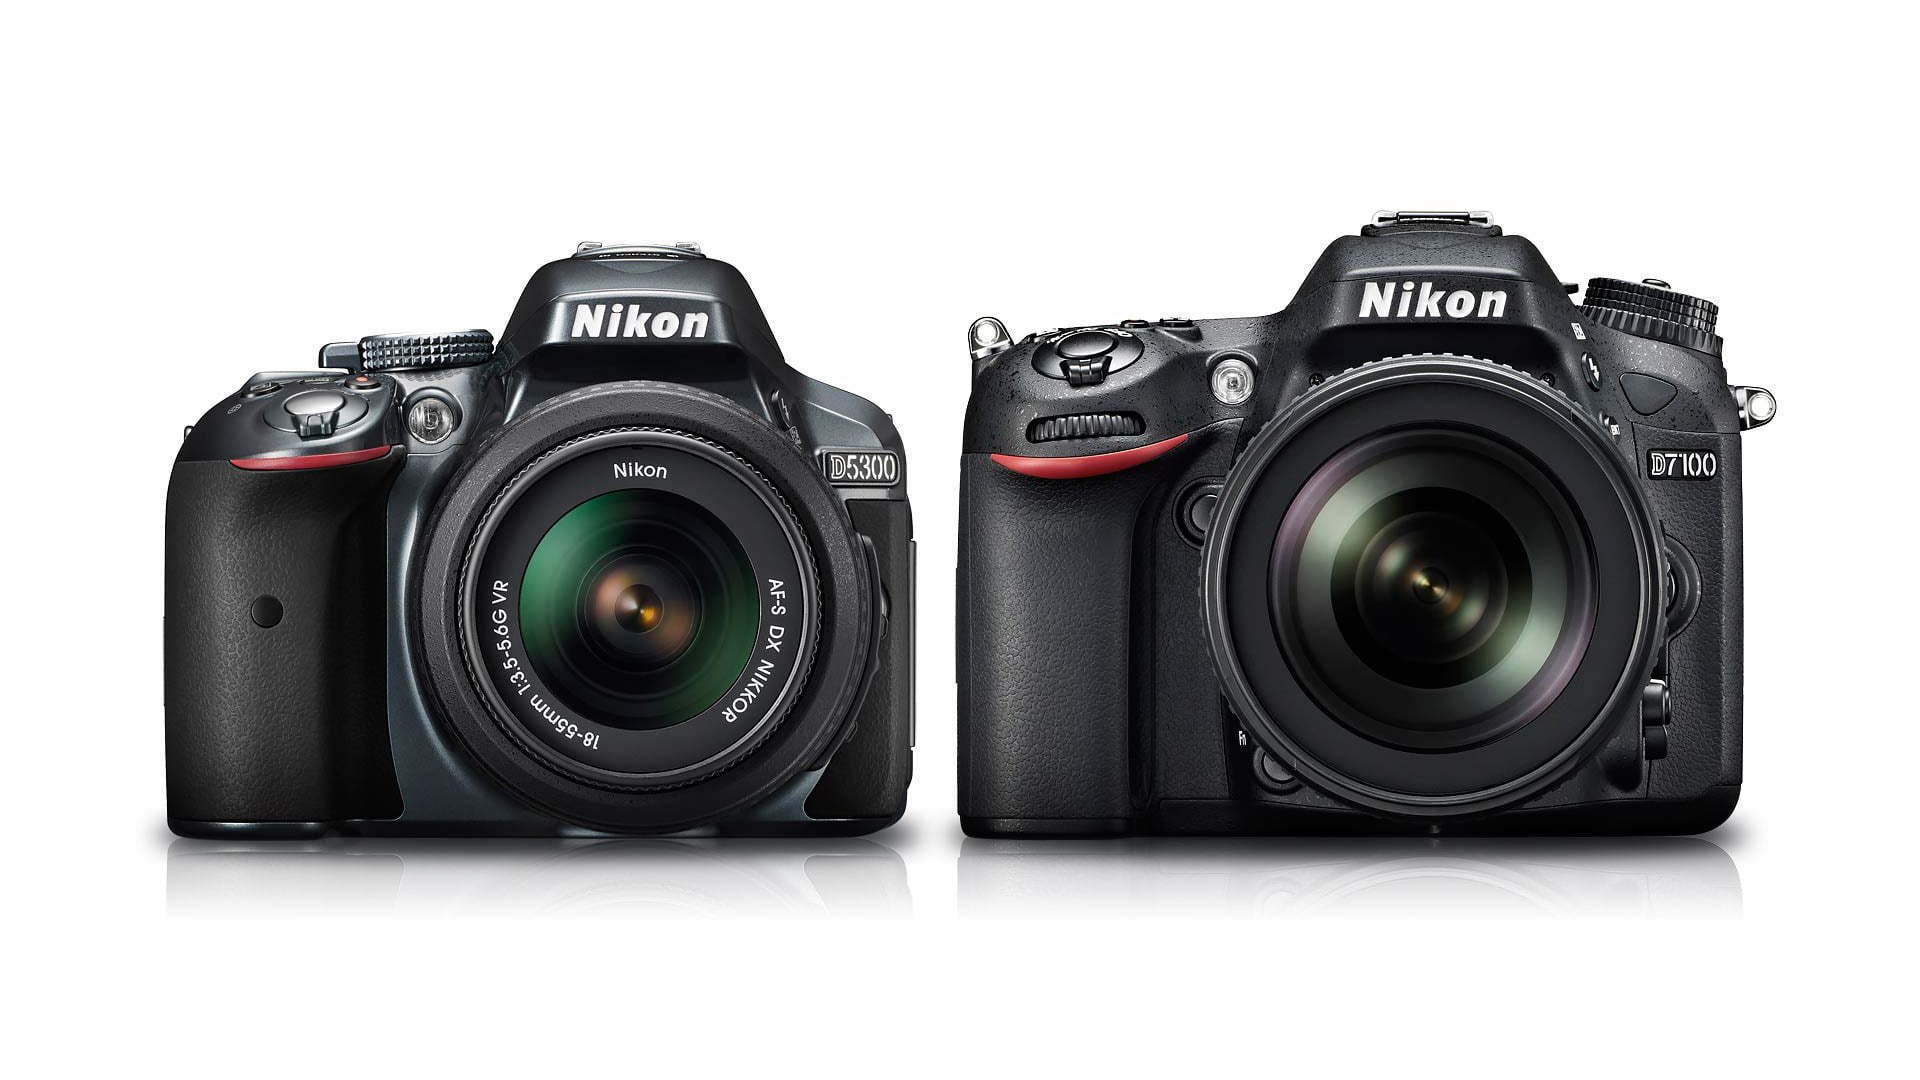 Nikon D3200 sẽ là người bạn đồng hành đáng tin cậy cho bạn trong mọi điều kiện ánh sáng. Với hiệu suất chụp ảnh tuyệt vời trong ánh sáng thấp và khả năng giảm nhiễu, bạn có thể đảm bảo ảnh của bạn sẽ luôn chất lượng dù ở điều kiện khó khăn nhất.